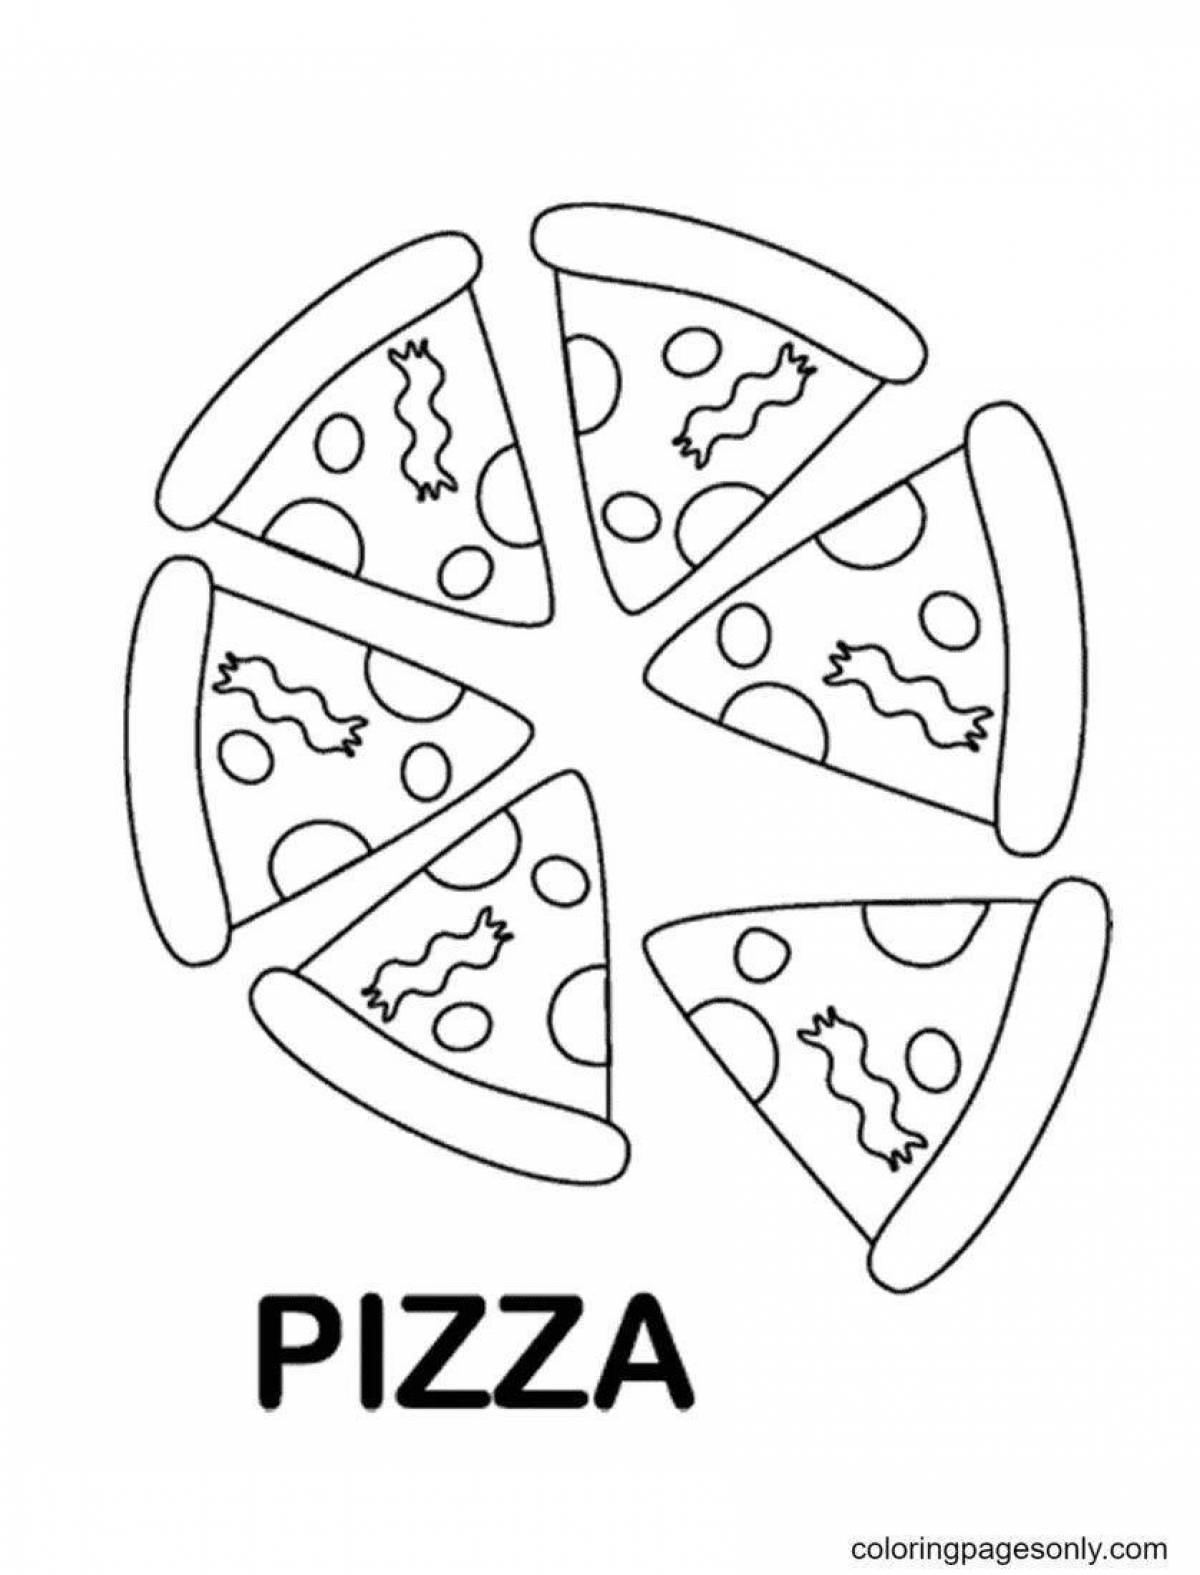 Pepperoni pizza invitation coloring book